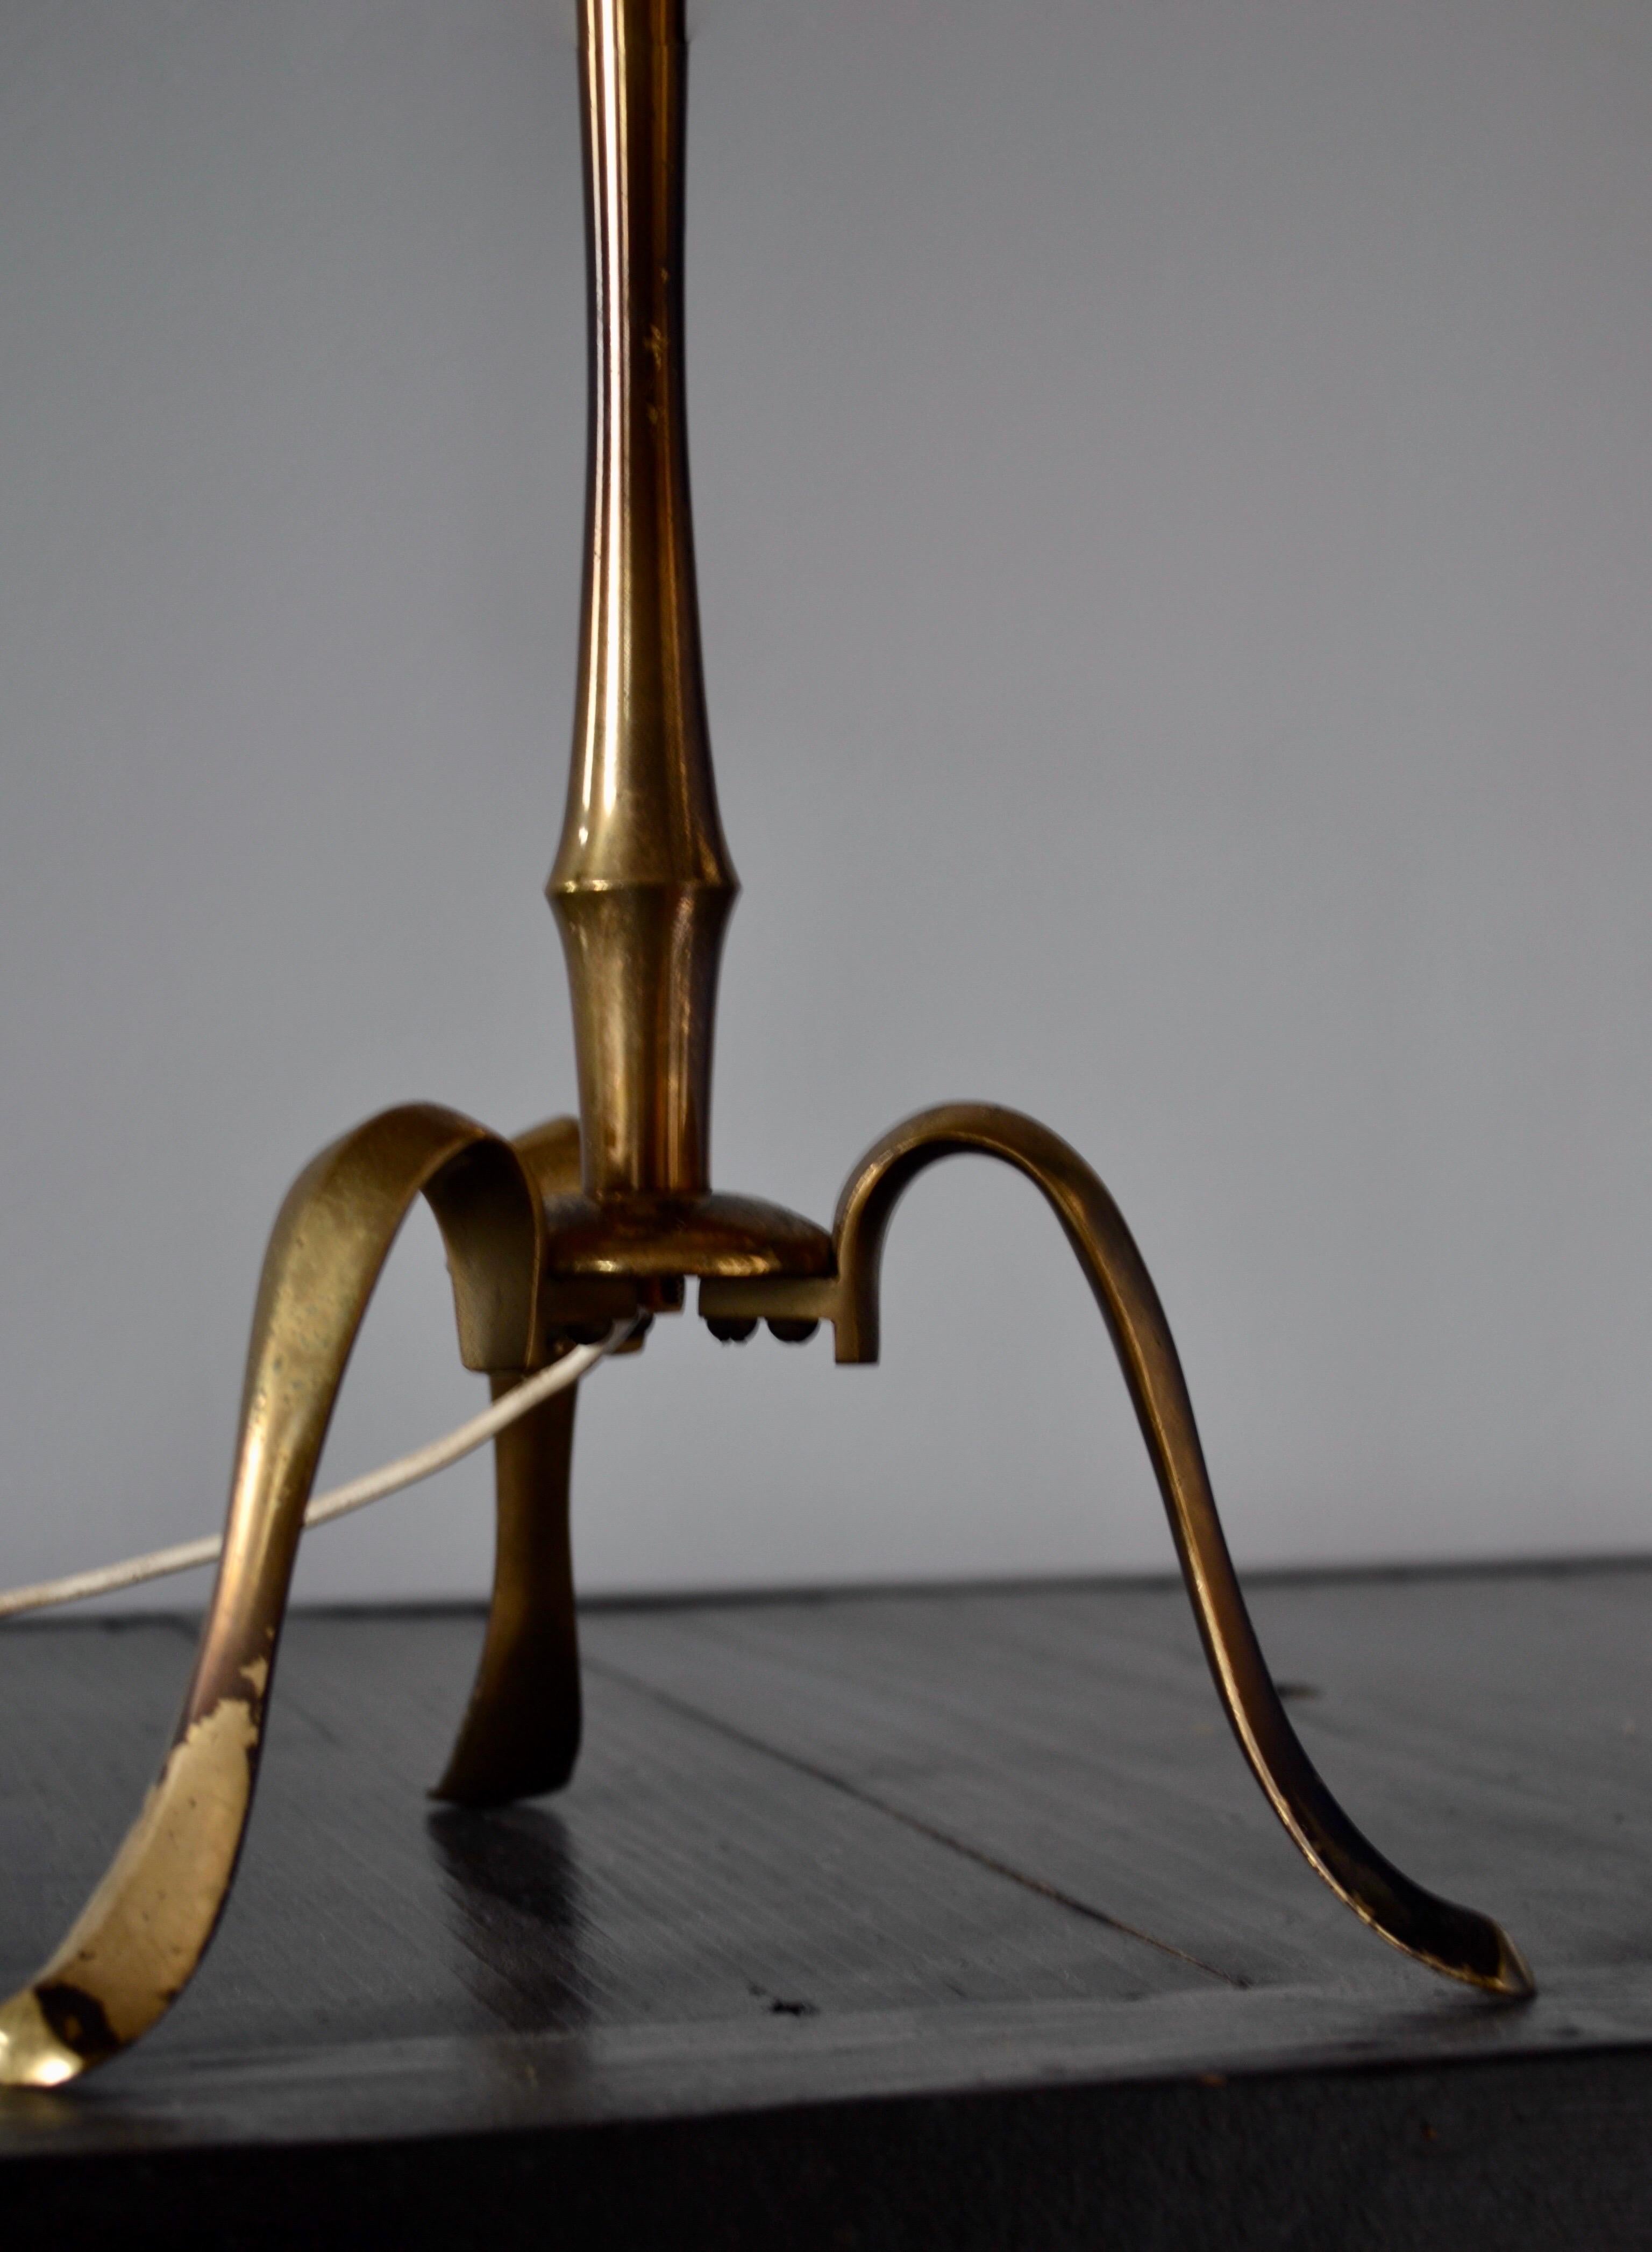 Cette lampe à poser Maison Bagues, réalisée en bronze doré avec des détails en faux bambou, dégage une sophistication remarquable. La patine subtile des pieds de la lampe ajoute une touche de caractère authentique. L'abat-jour noir et doré d'origine